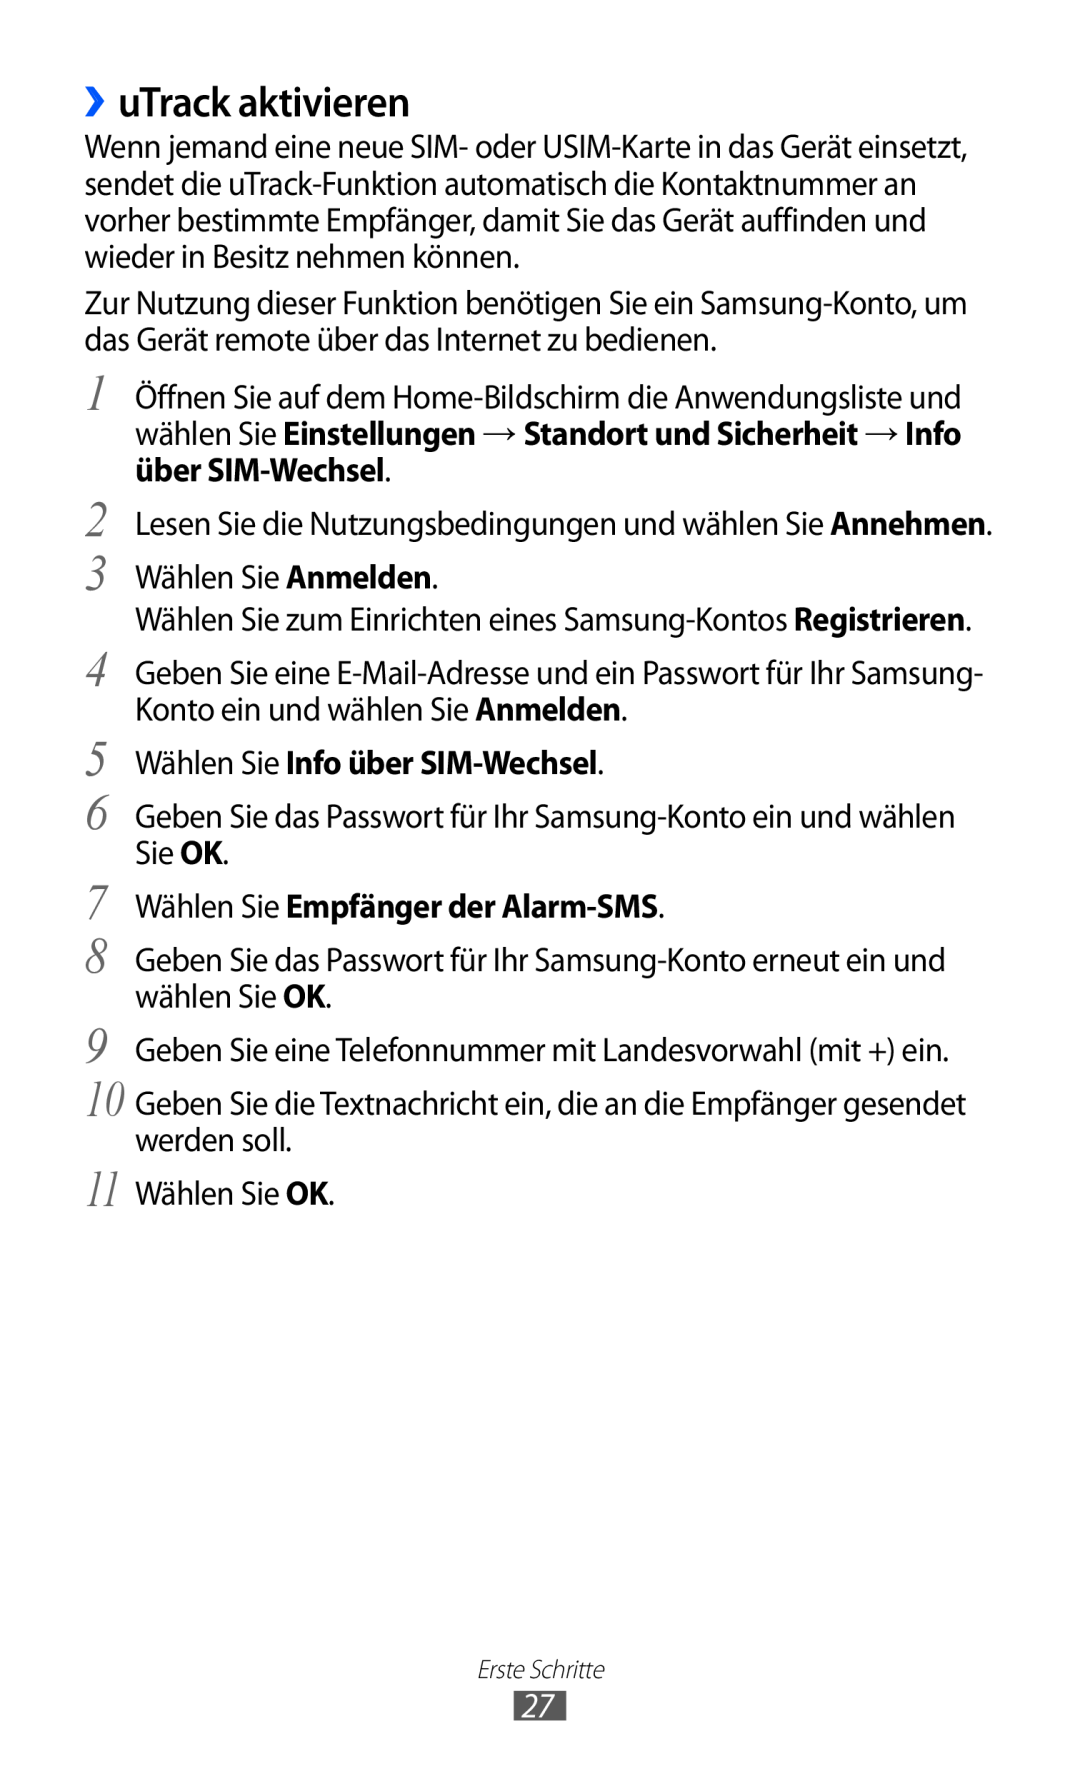 Samsung GT-P7501UWDDBT manual ››uTrack aktivieren, Wählen Sie Info über SIM-Wechsel, Wählen Sie Empfänger der Alarm-SMS 